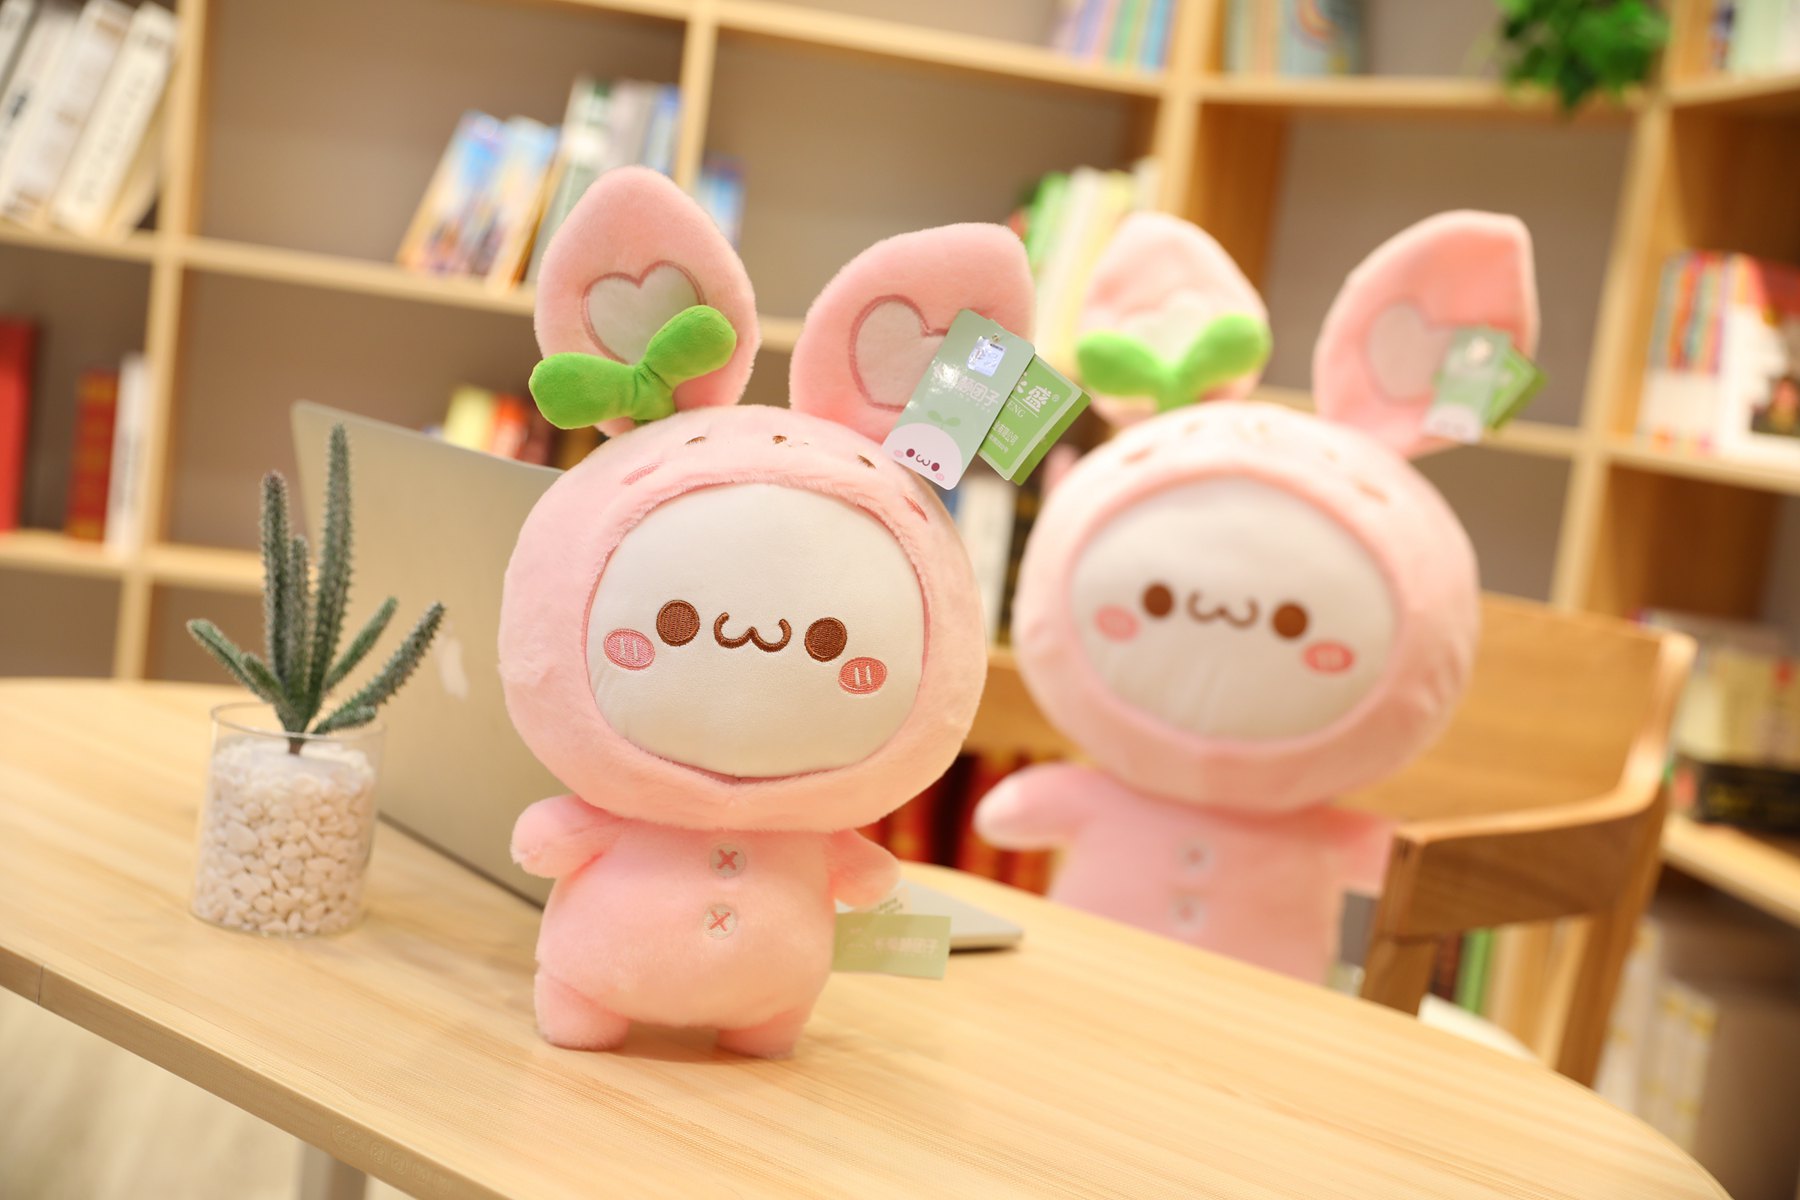 30-65cm Creative Kawaii Rabbit Dumpling Toys Stuffed Lovely Animal Plush Doll for Kids Children Soft Pillow Nice Gifts for Girls